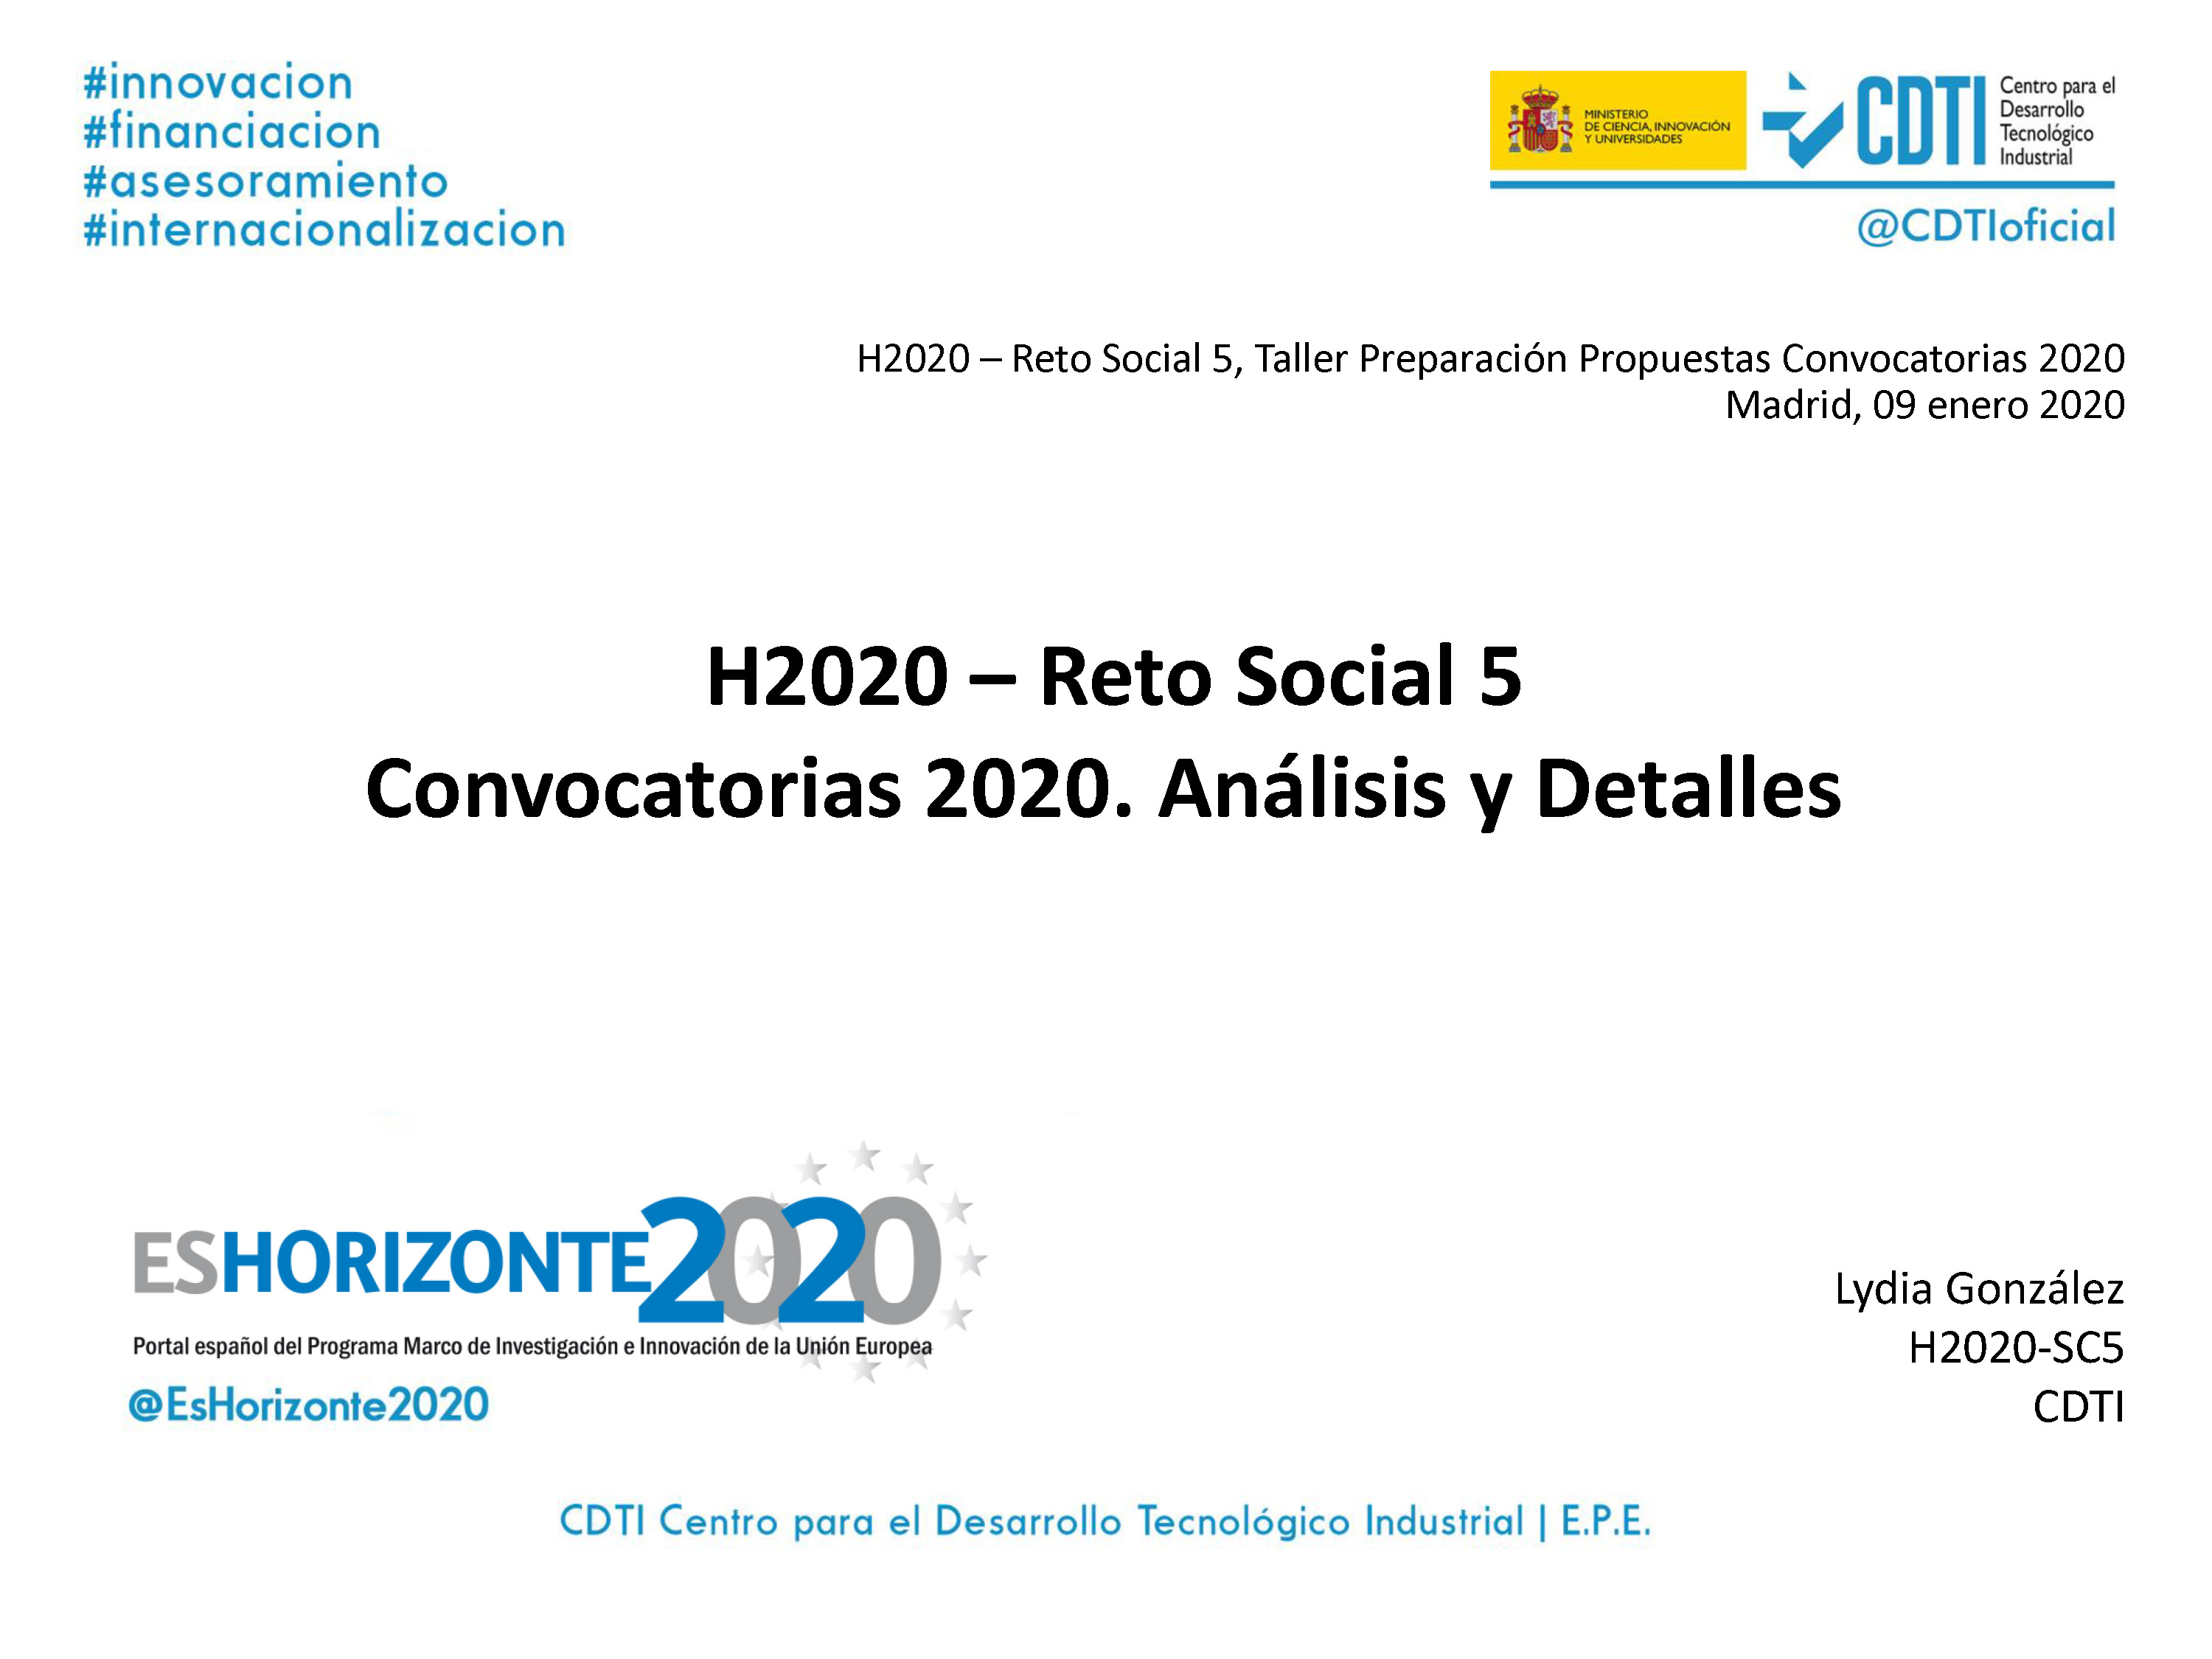 Taller primera etapa de Reto Social 5 Convocatorias 2020: Acción por el Clima, Medio Ambiente, Eficiencia de Recursos y Materias Primas